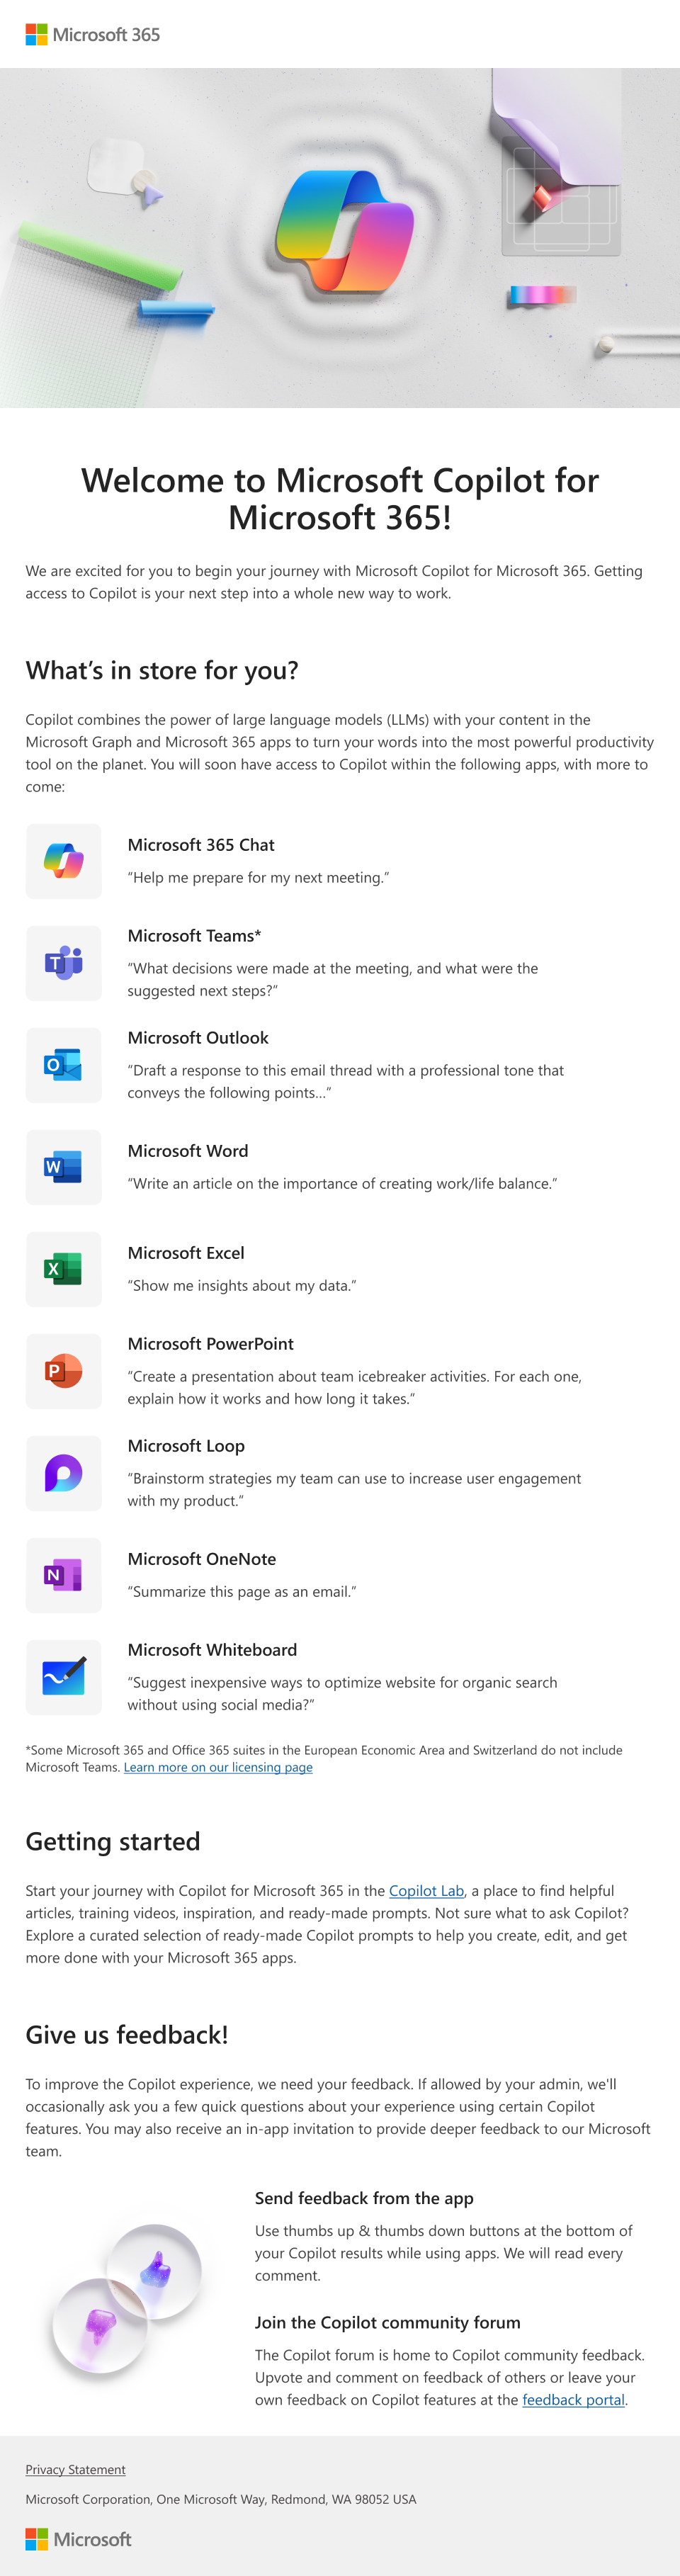 Image d’un e-mail présentant Microsoft Copilot pour Microsoft 365 et ses fonctionnalités qu’un administrateur peut fournir aux utilisateurs.